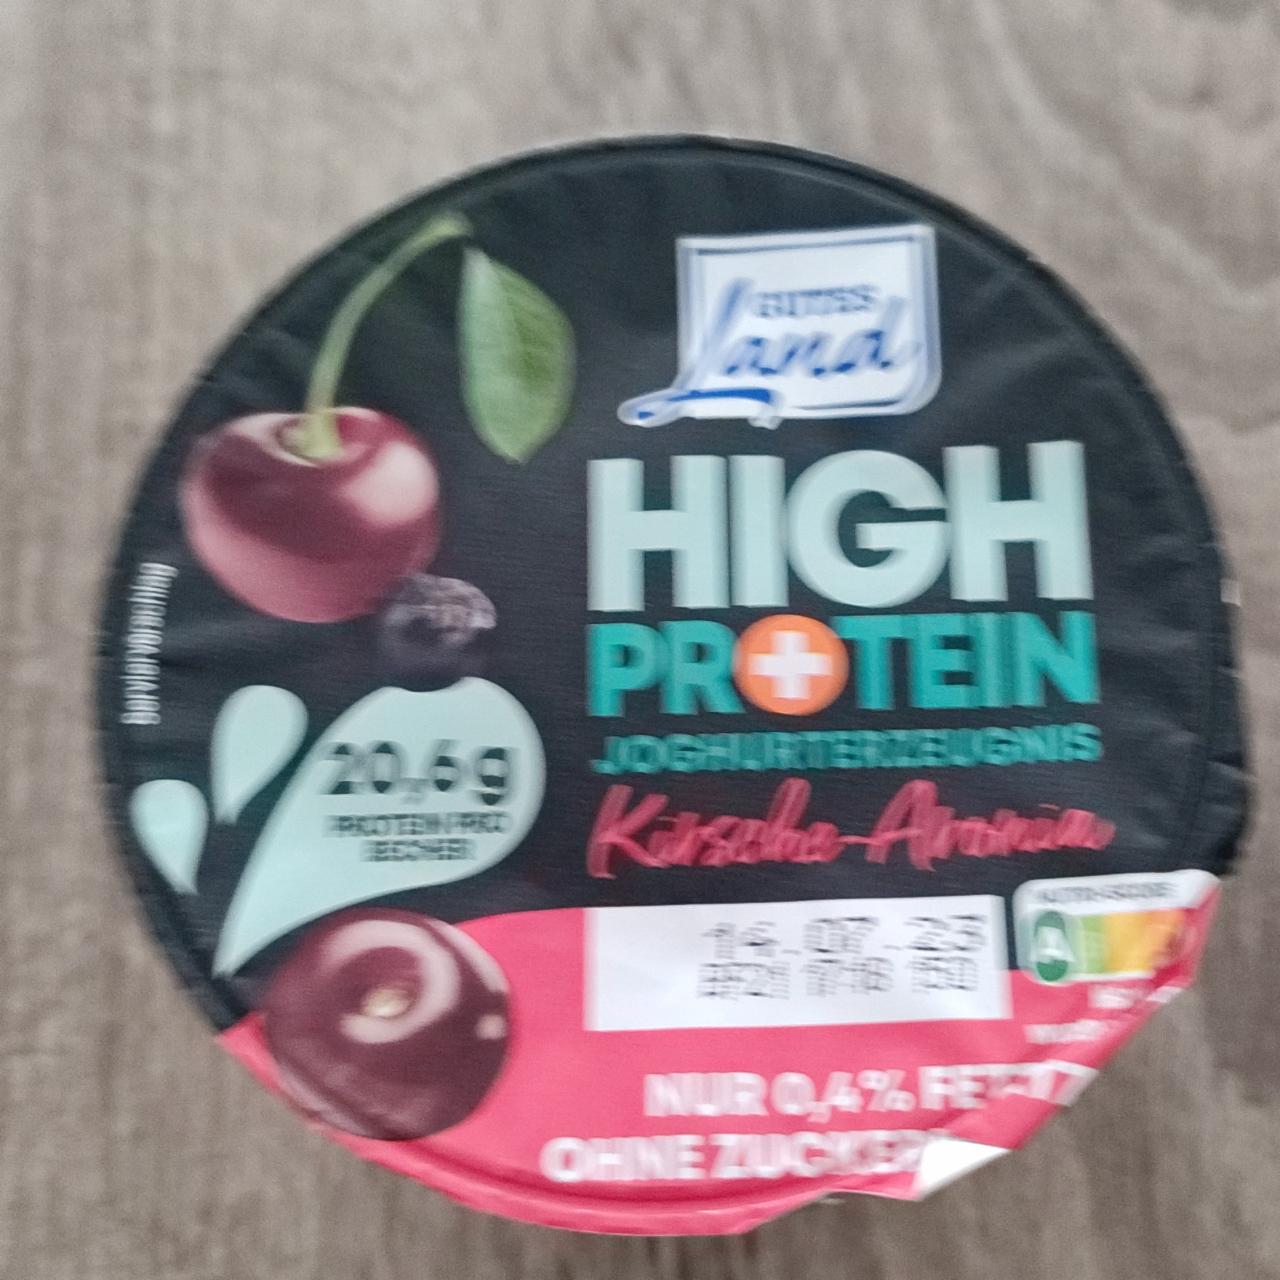 Фото - Йогурт протеиновый вишня и черная смородина High Protein Joghurterzeugnis Kirsche-Aronia Gutes Land